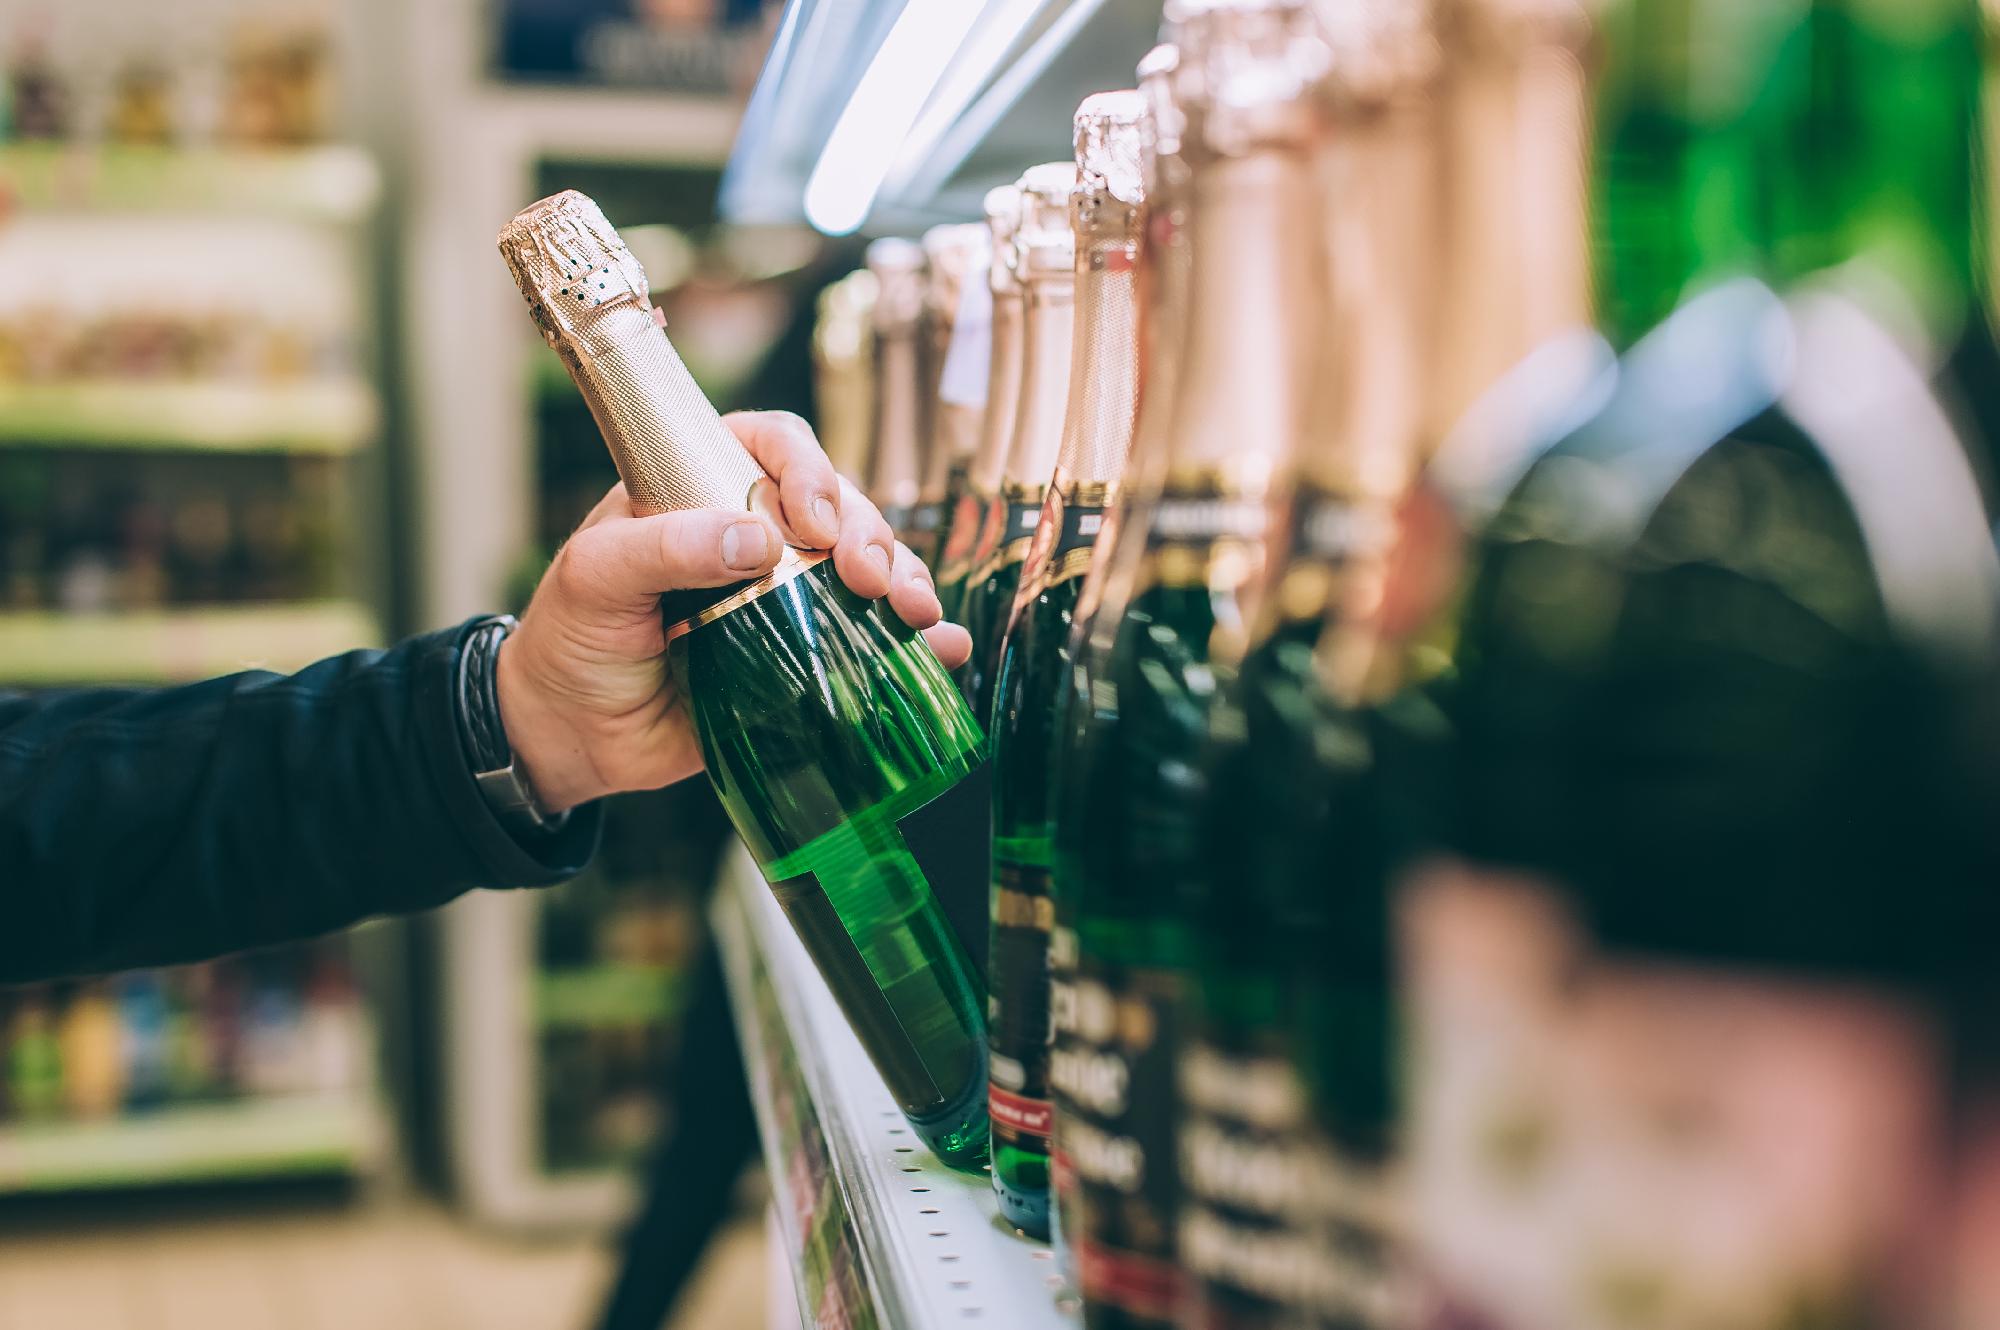 Magyarországon évente mintegy 200 ezer hektoliter pezsgőt állítanak elő